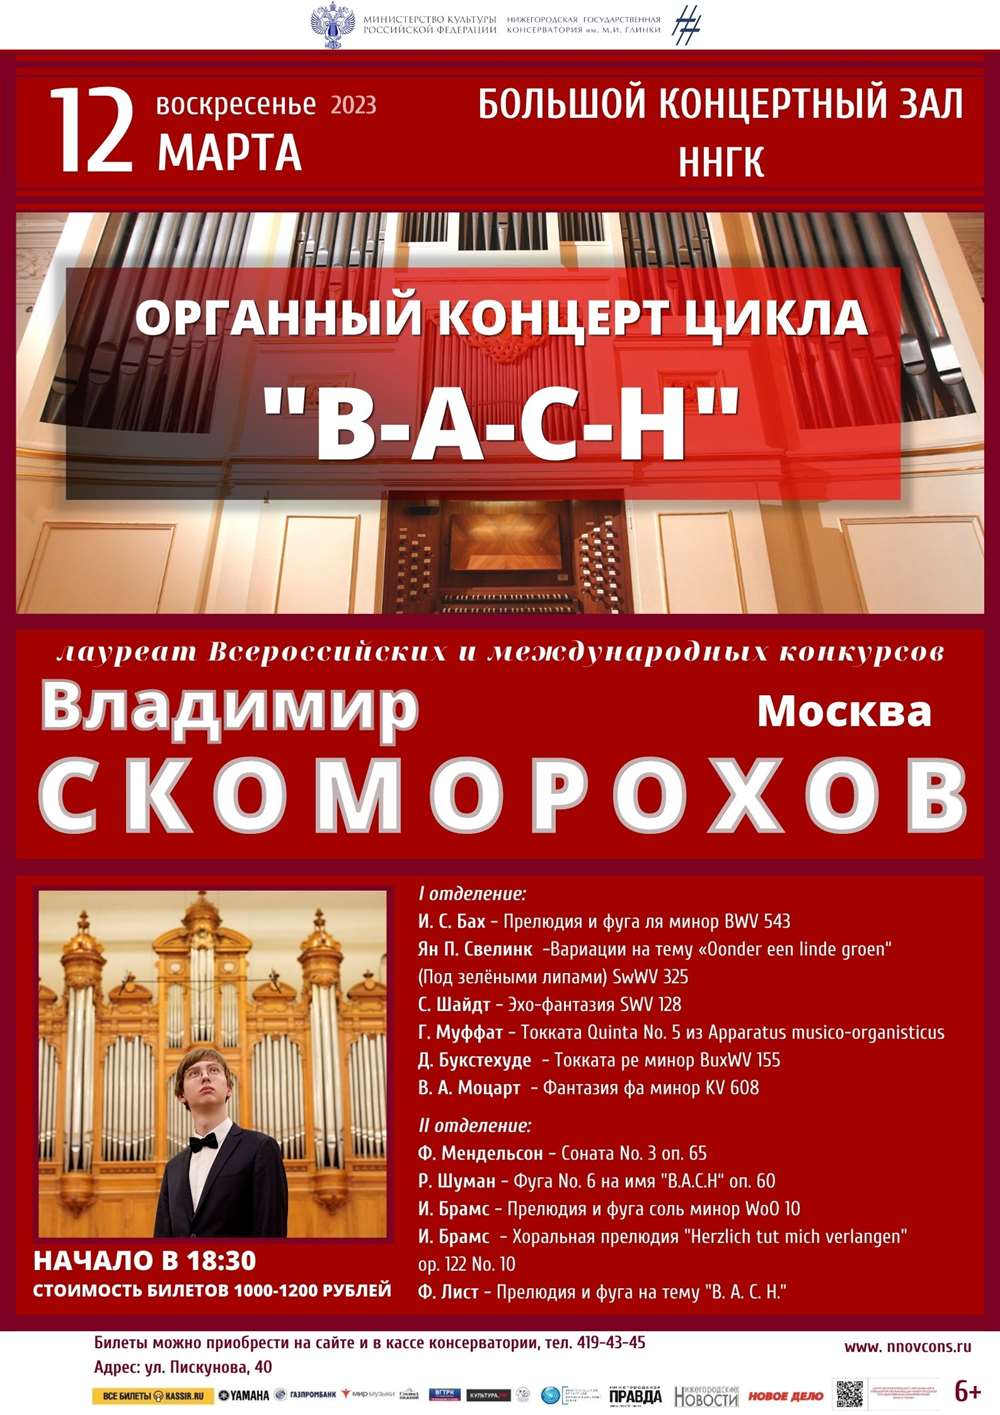 Органный концерт цикла "B-A-C-H". Владимир Скоморохов (Москва).